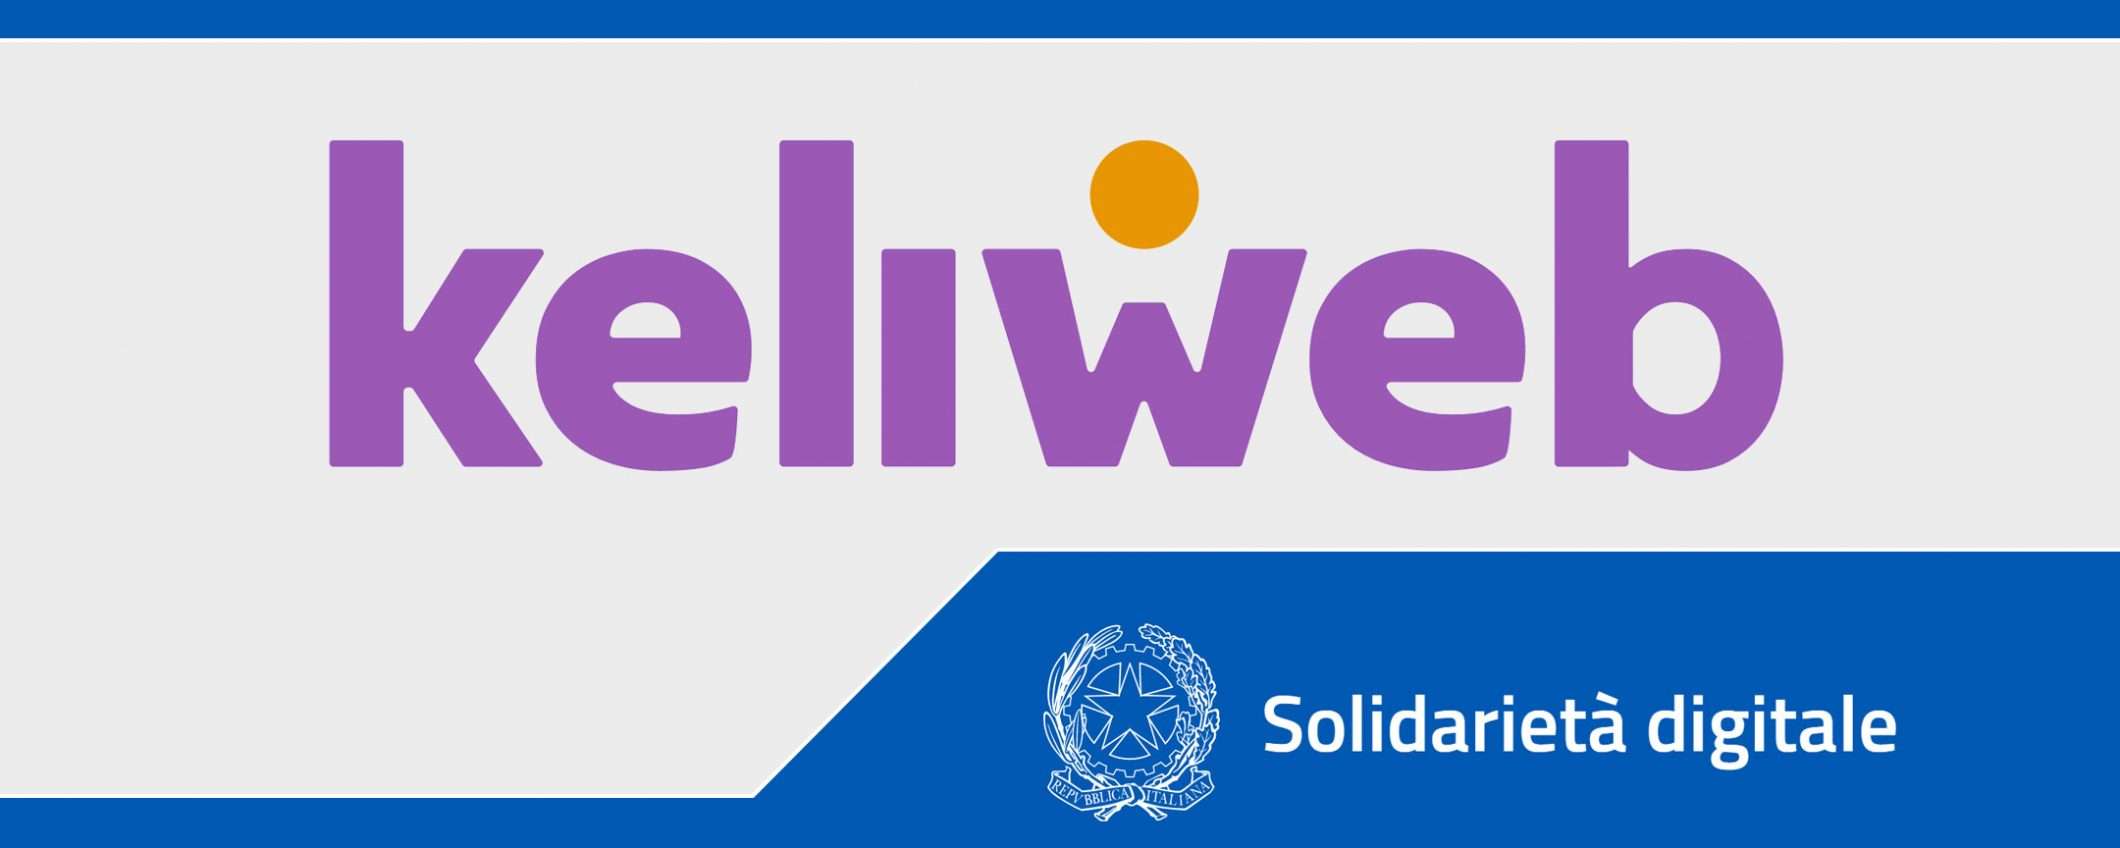 Solidarietà Digitale: il cloud di Keliweb